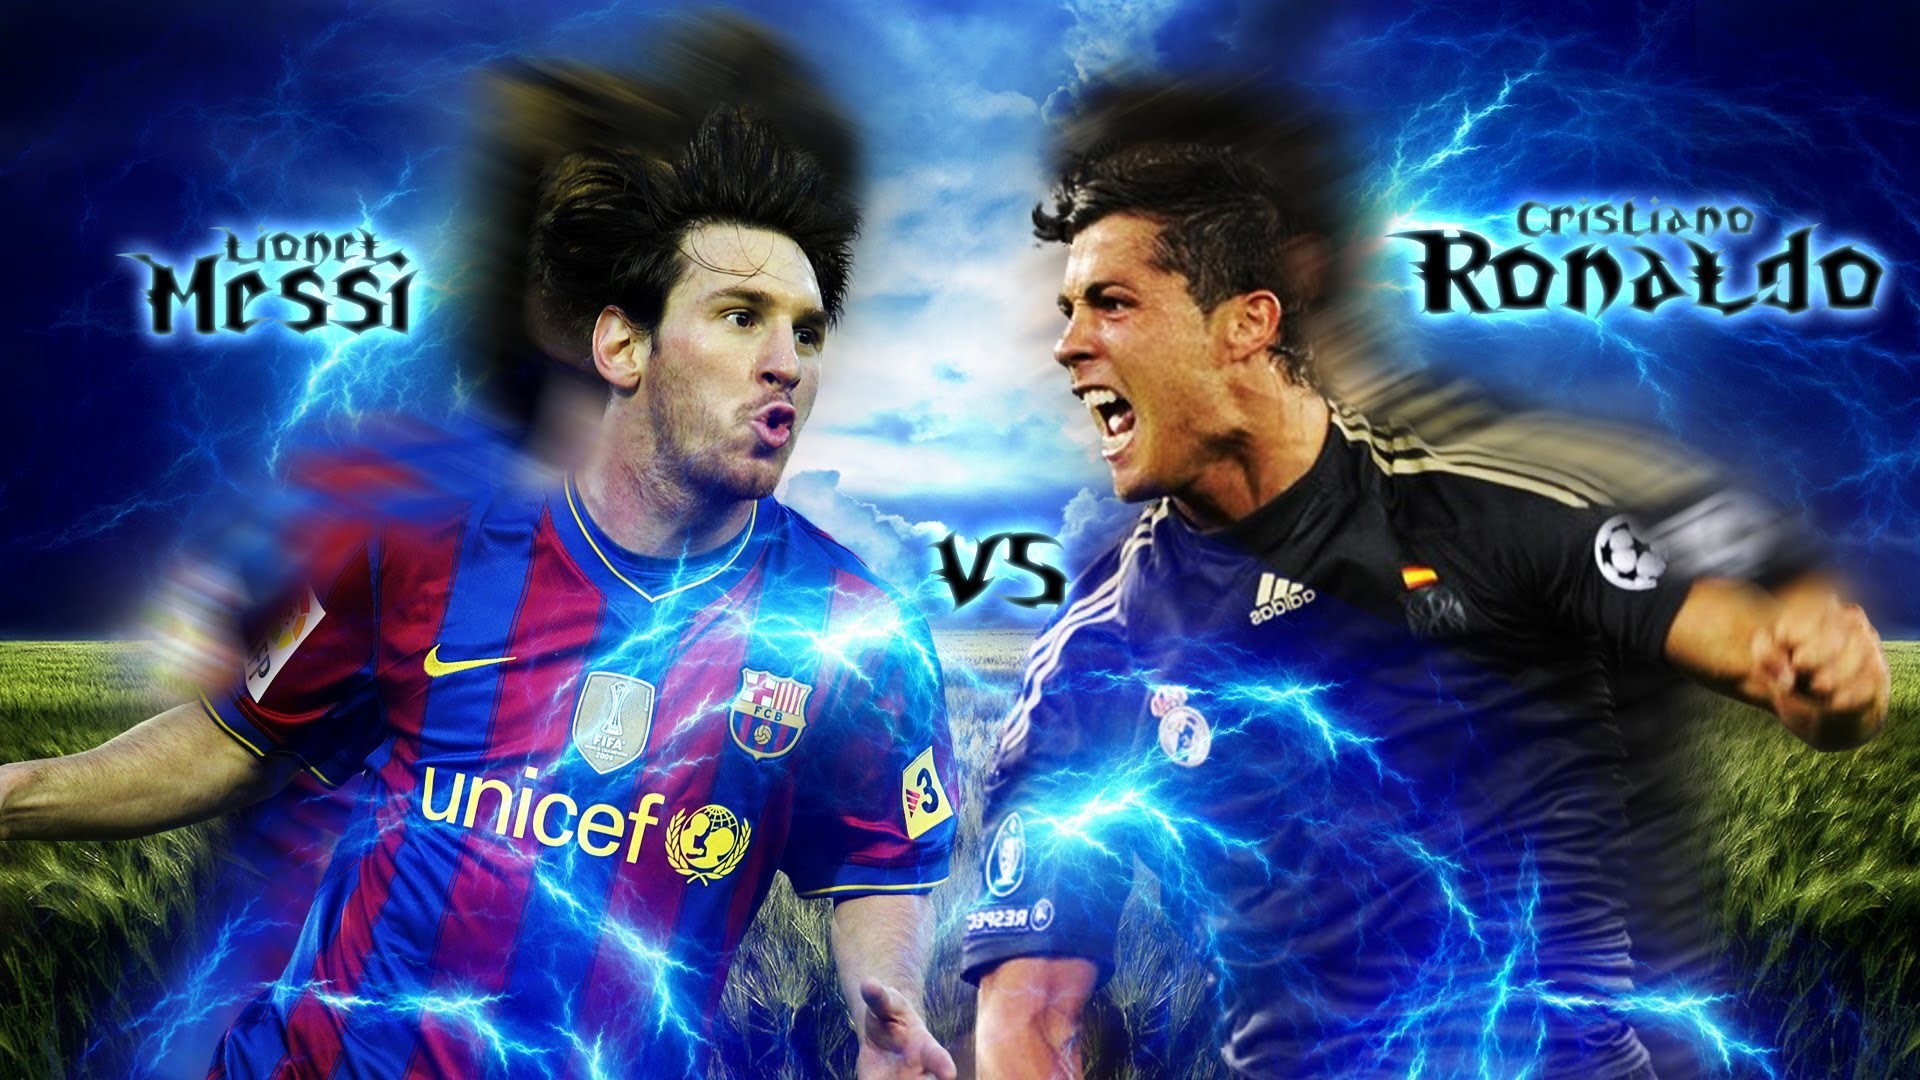 1920x1080 Lionel Messi v/s Cristiano Ronaldo wallpaper in AdobeÂ® PhotoshopÂ® software  - YouTube